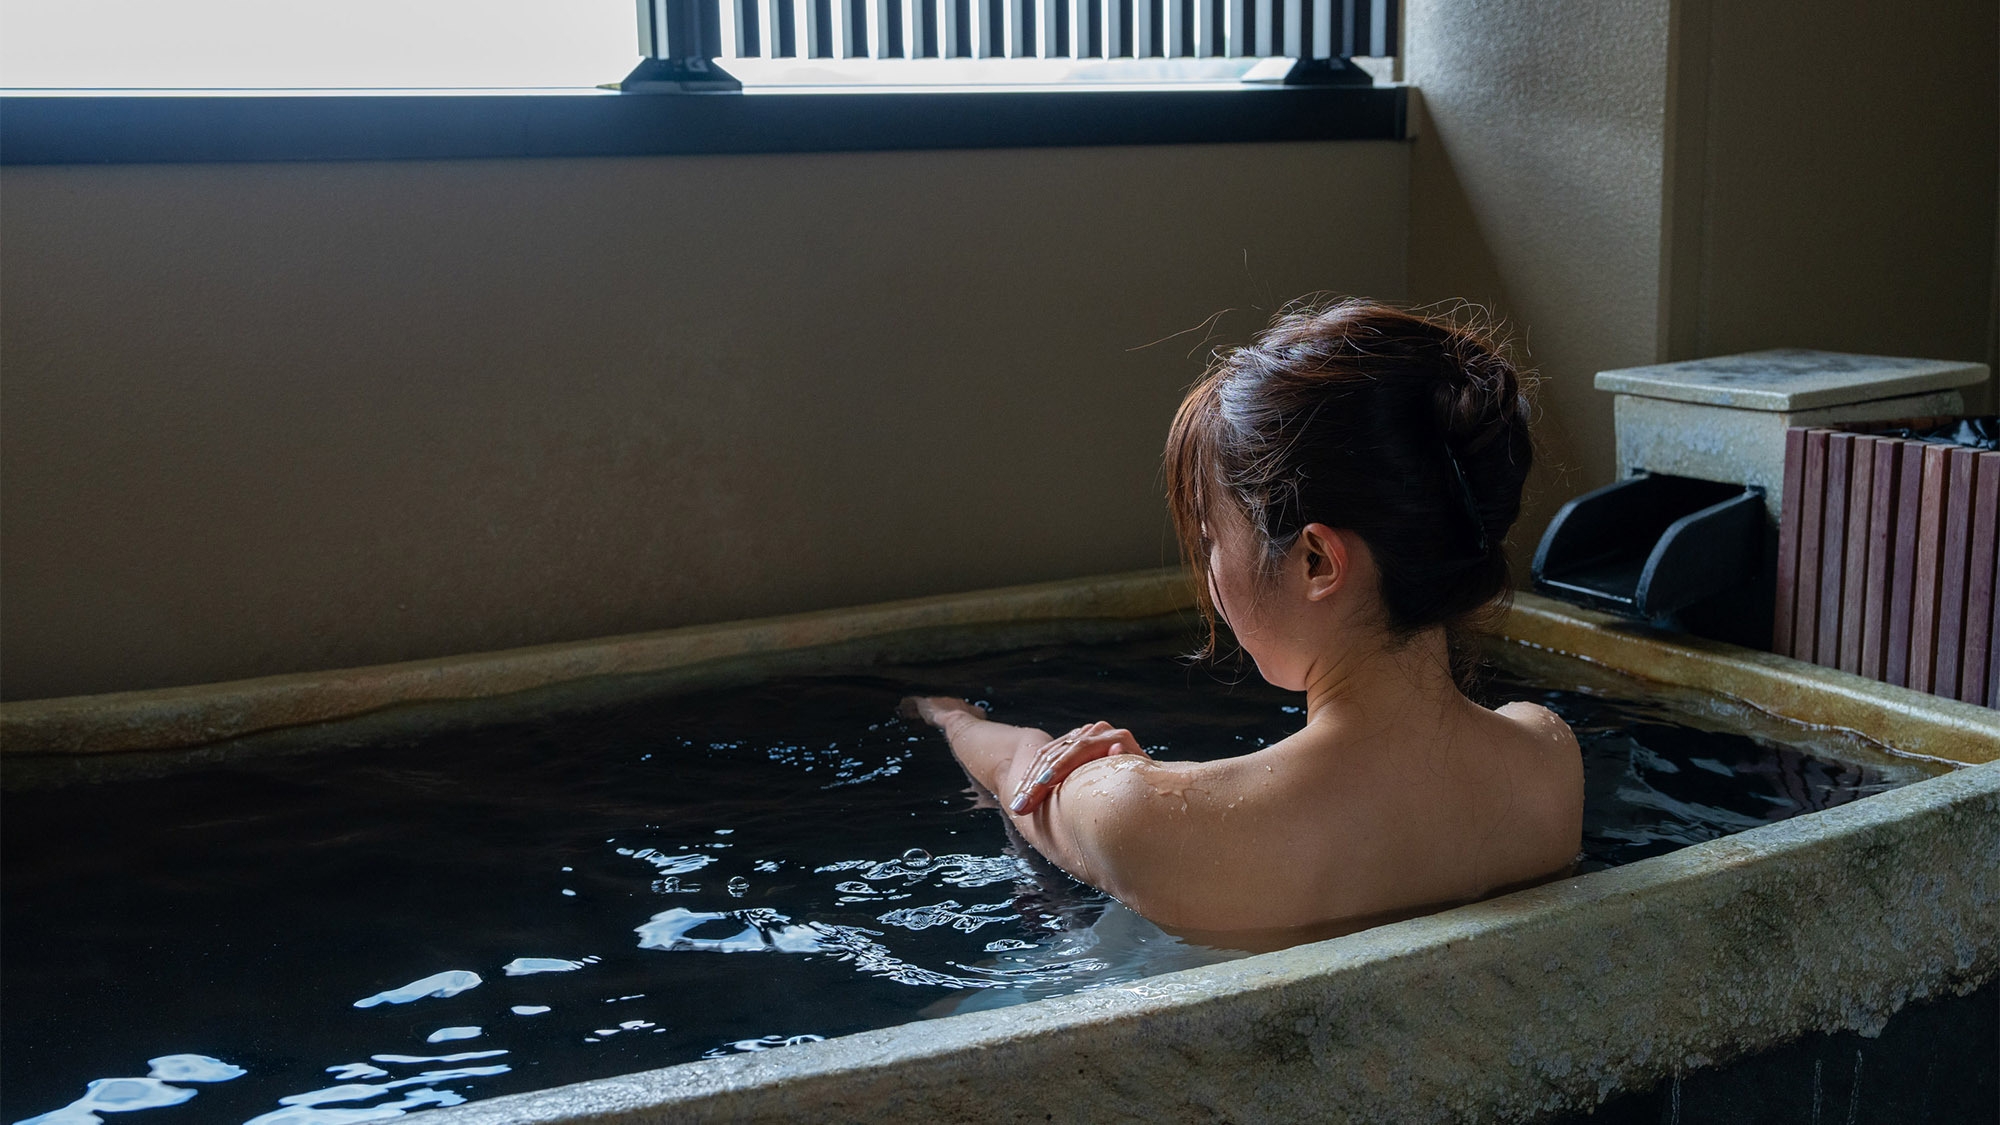 【カップル、ご夫婦限定】お二人の京都旅行をさらに素敵に。豪華特典付プラン《展望貸切露天風呂付》